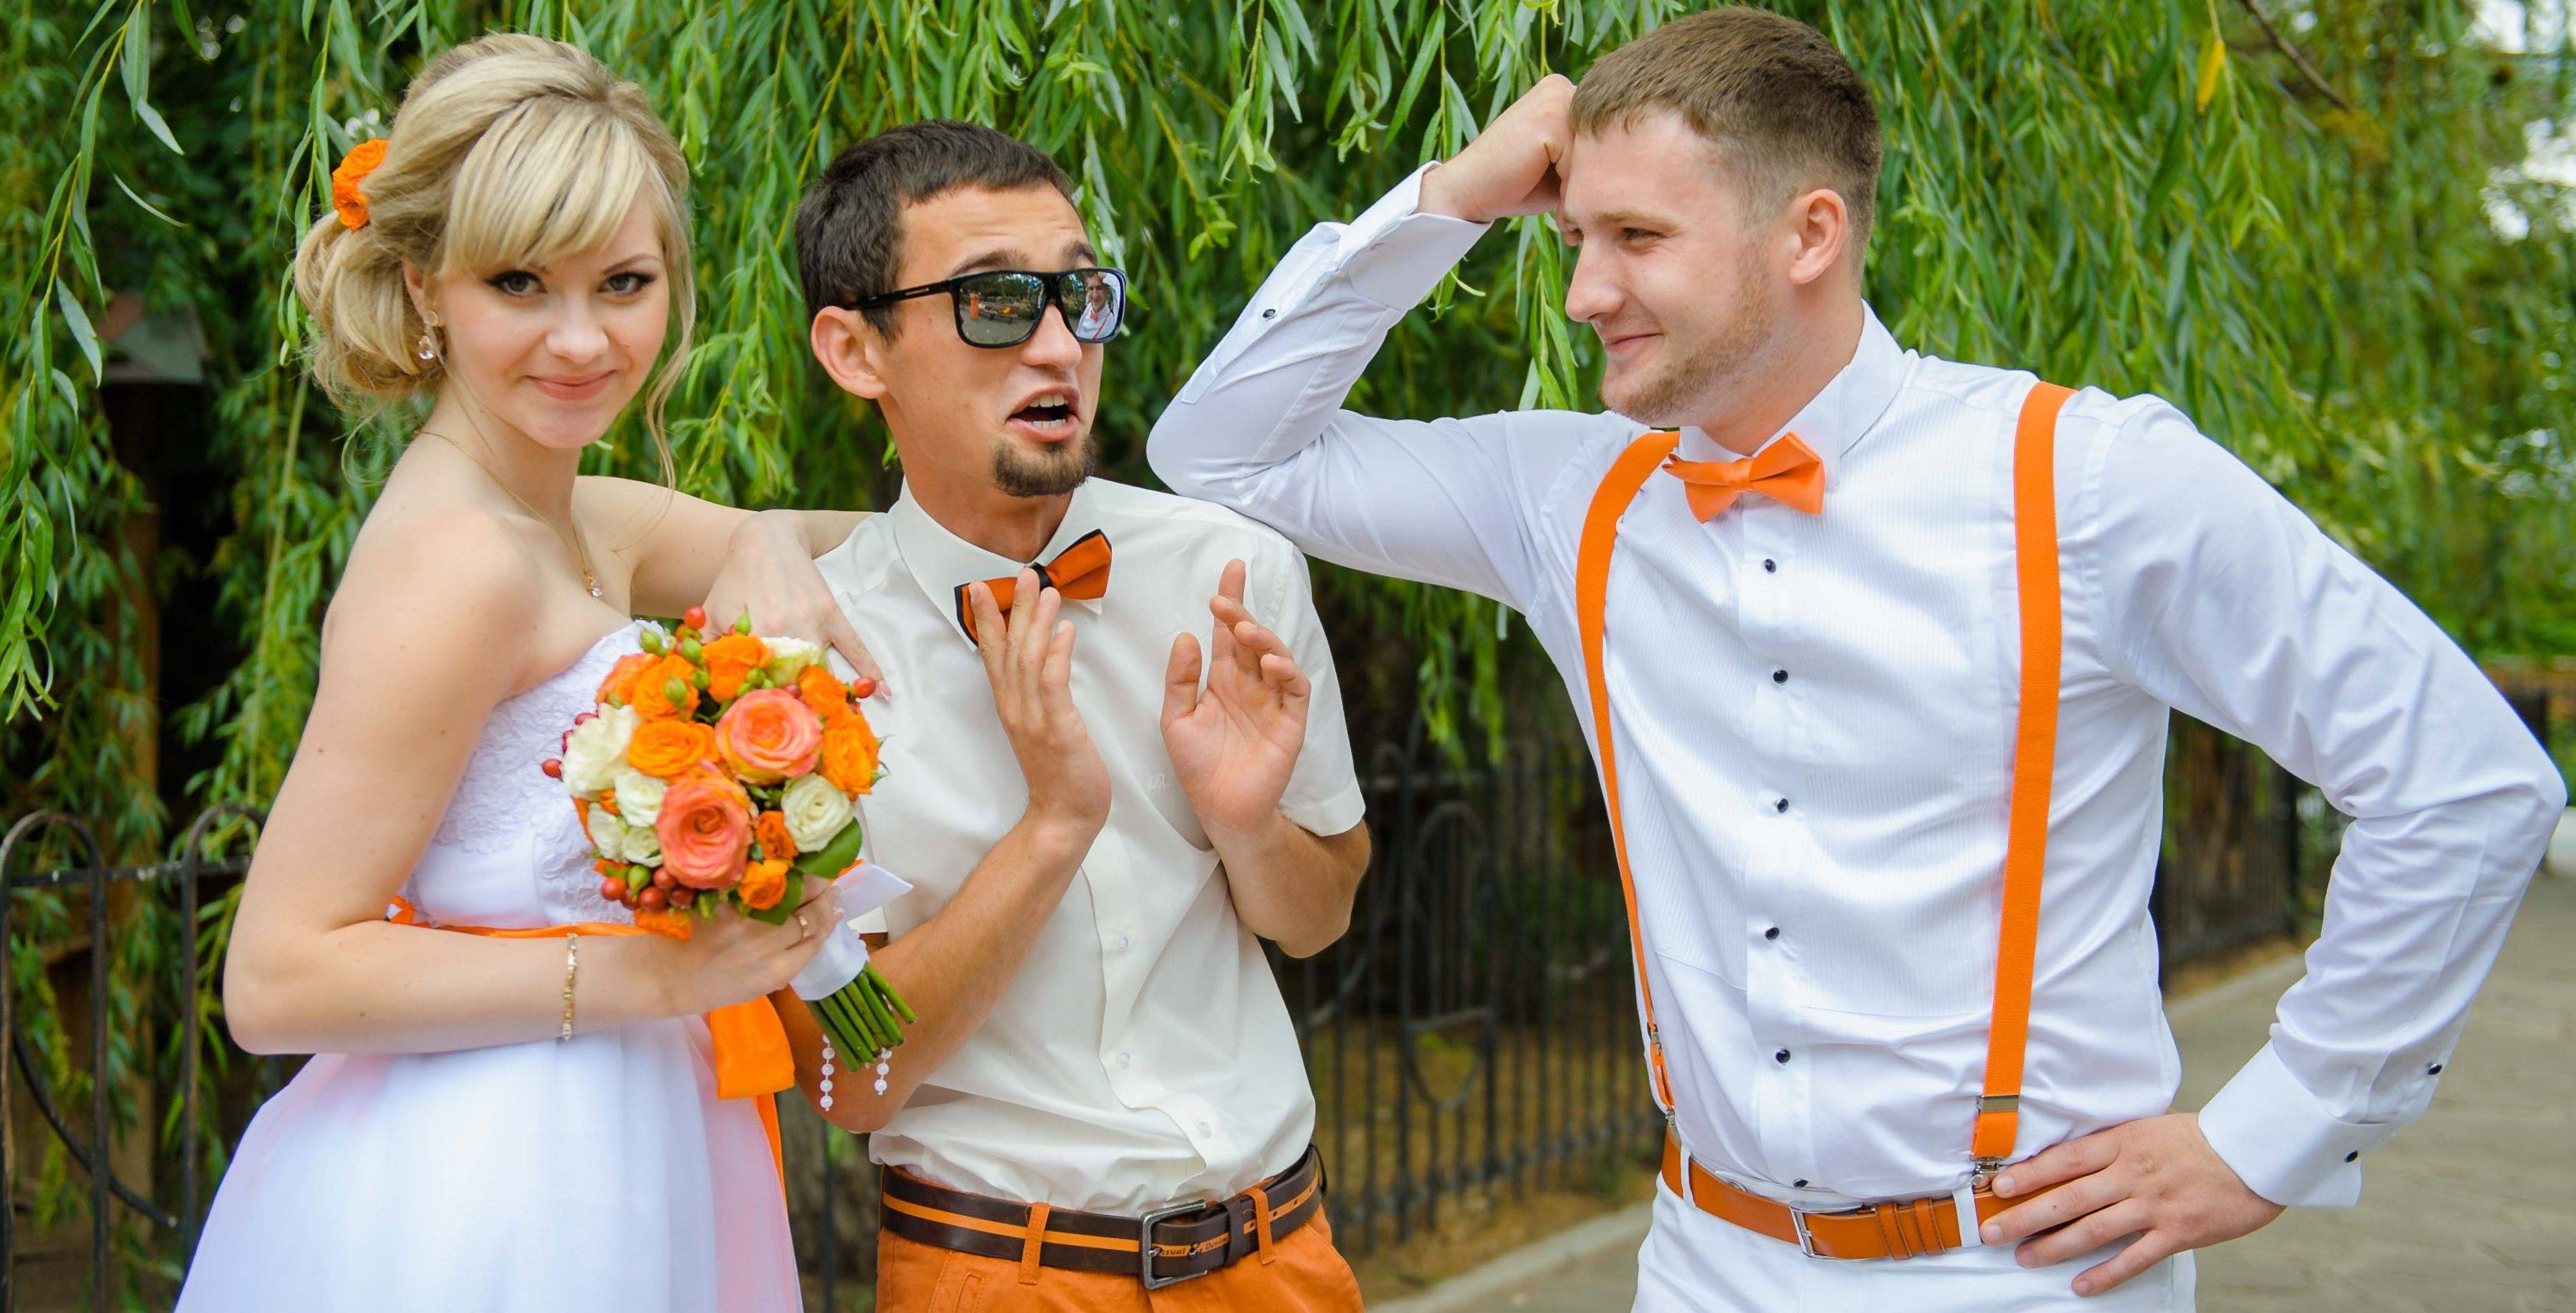 Вчерашний жених. Тематический костюм на свадьбу. Свидетель на свадьбе. Свадьба в оранжевом стиле. Необычные образы жениха и невесты.